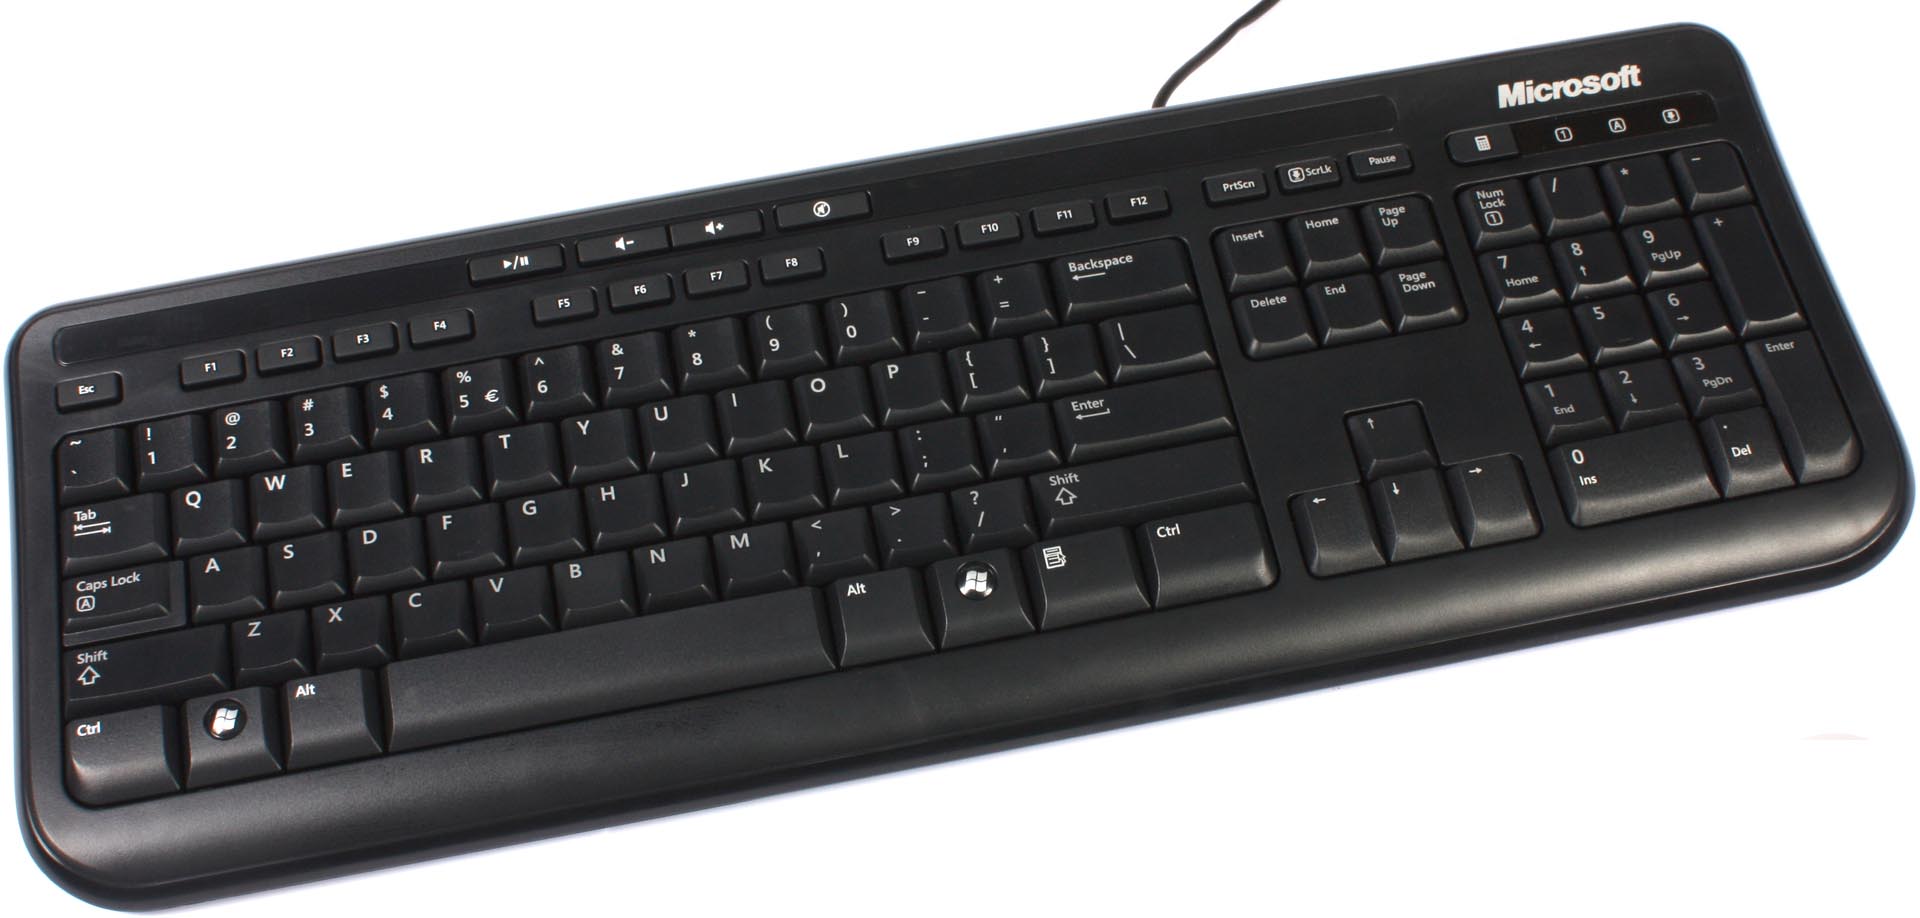 microsoft wired keyboard 600